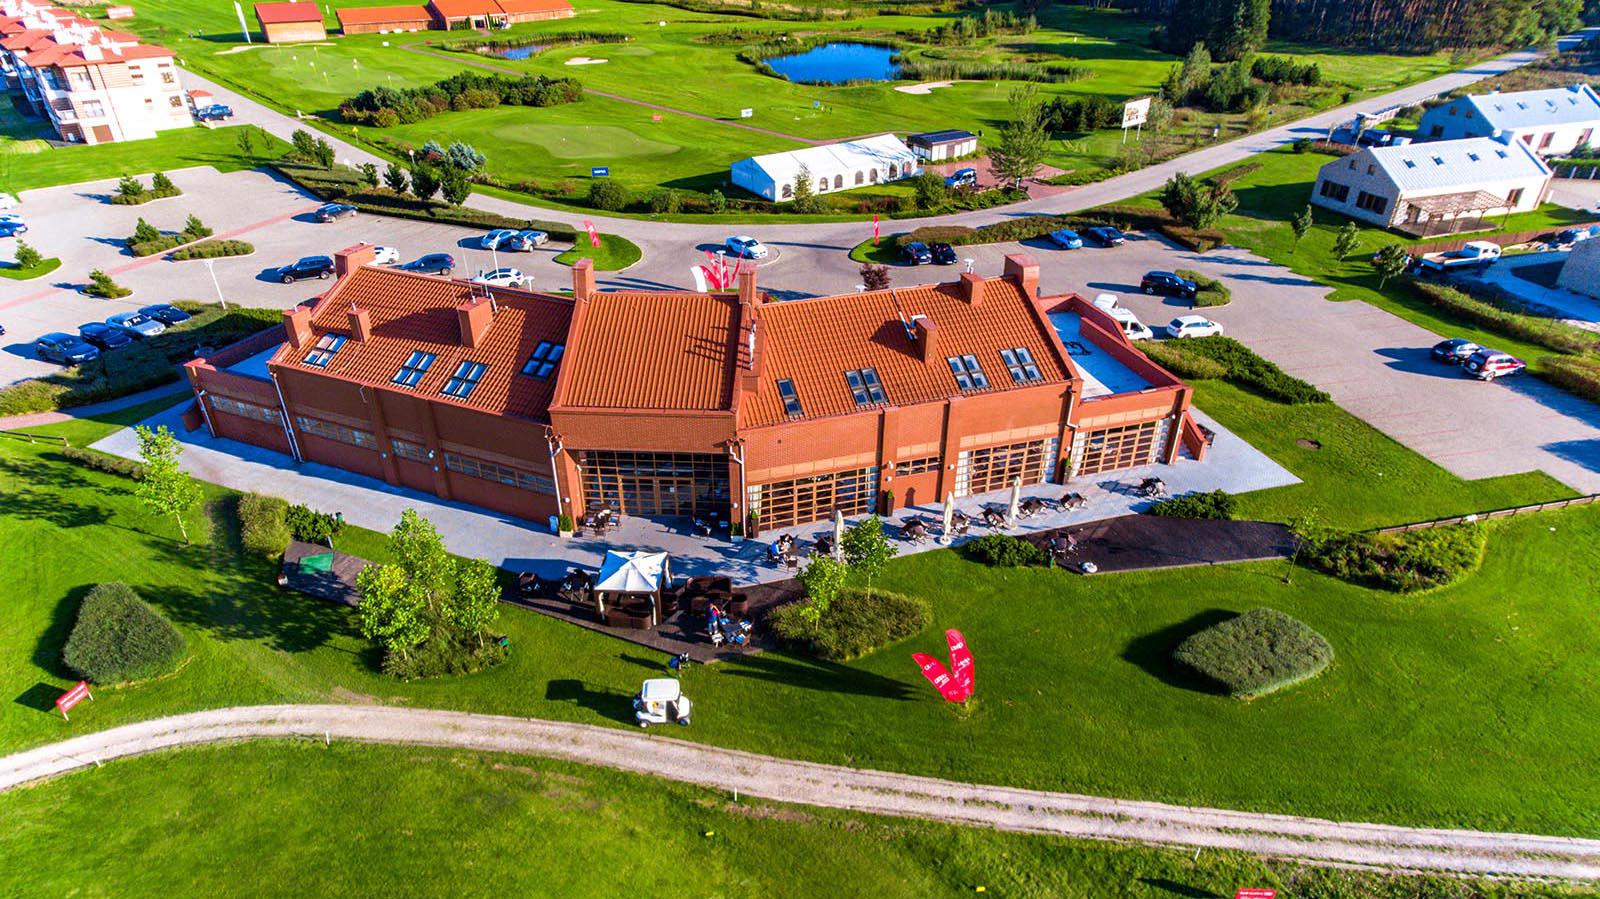 Sobienie Królewskie Golf & Country Club